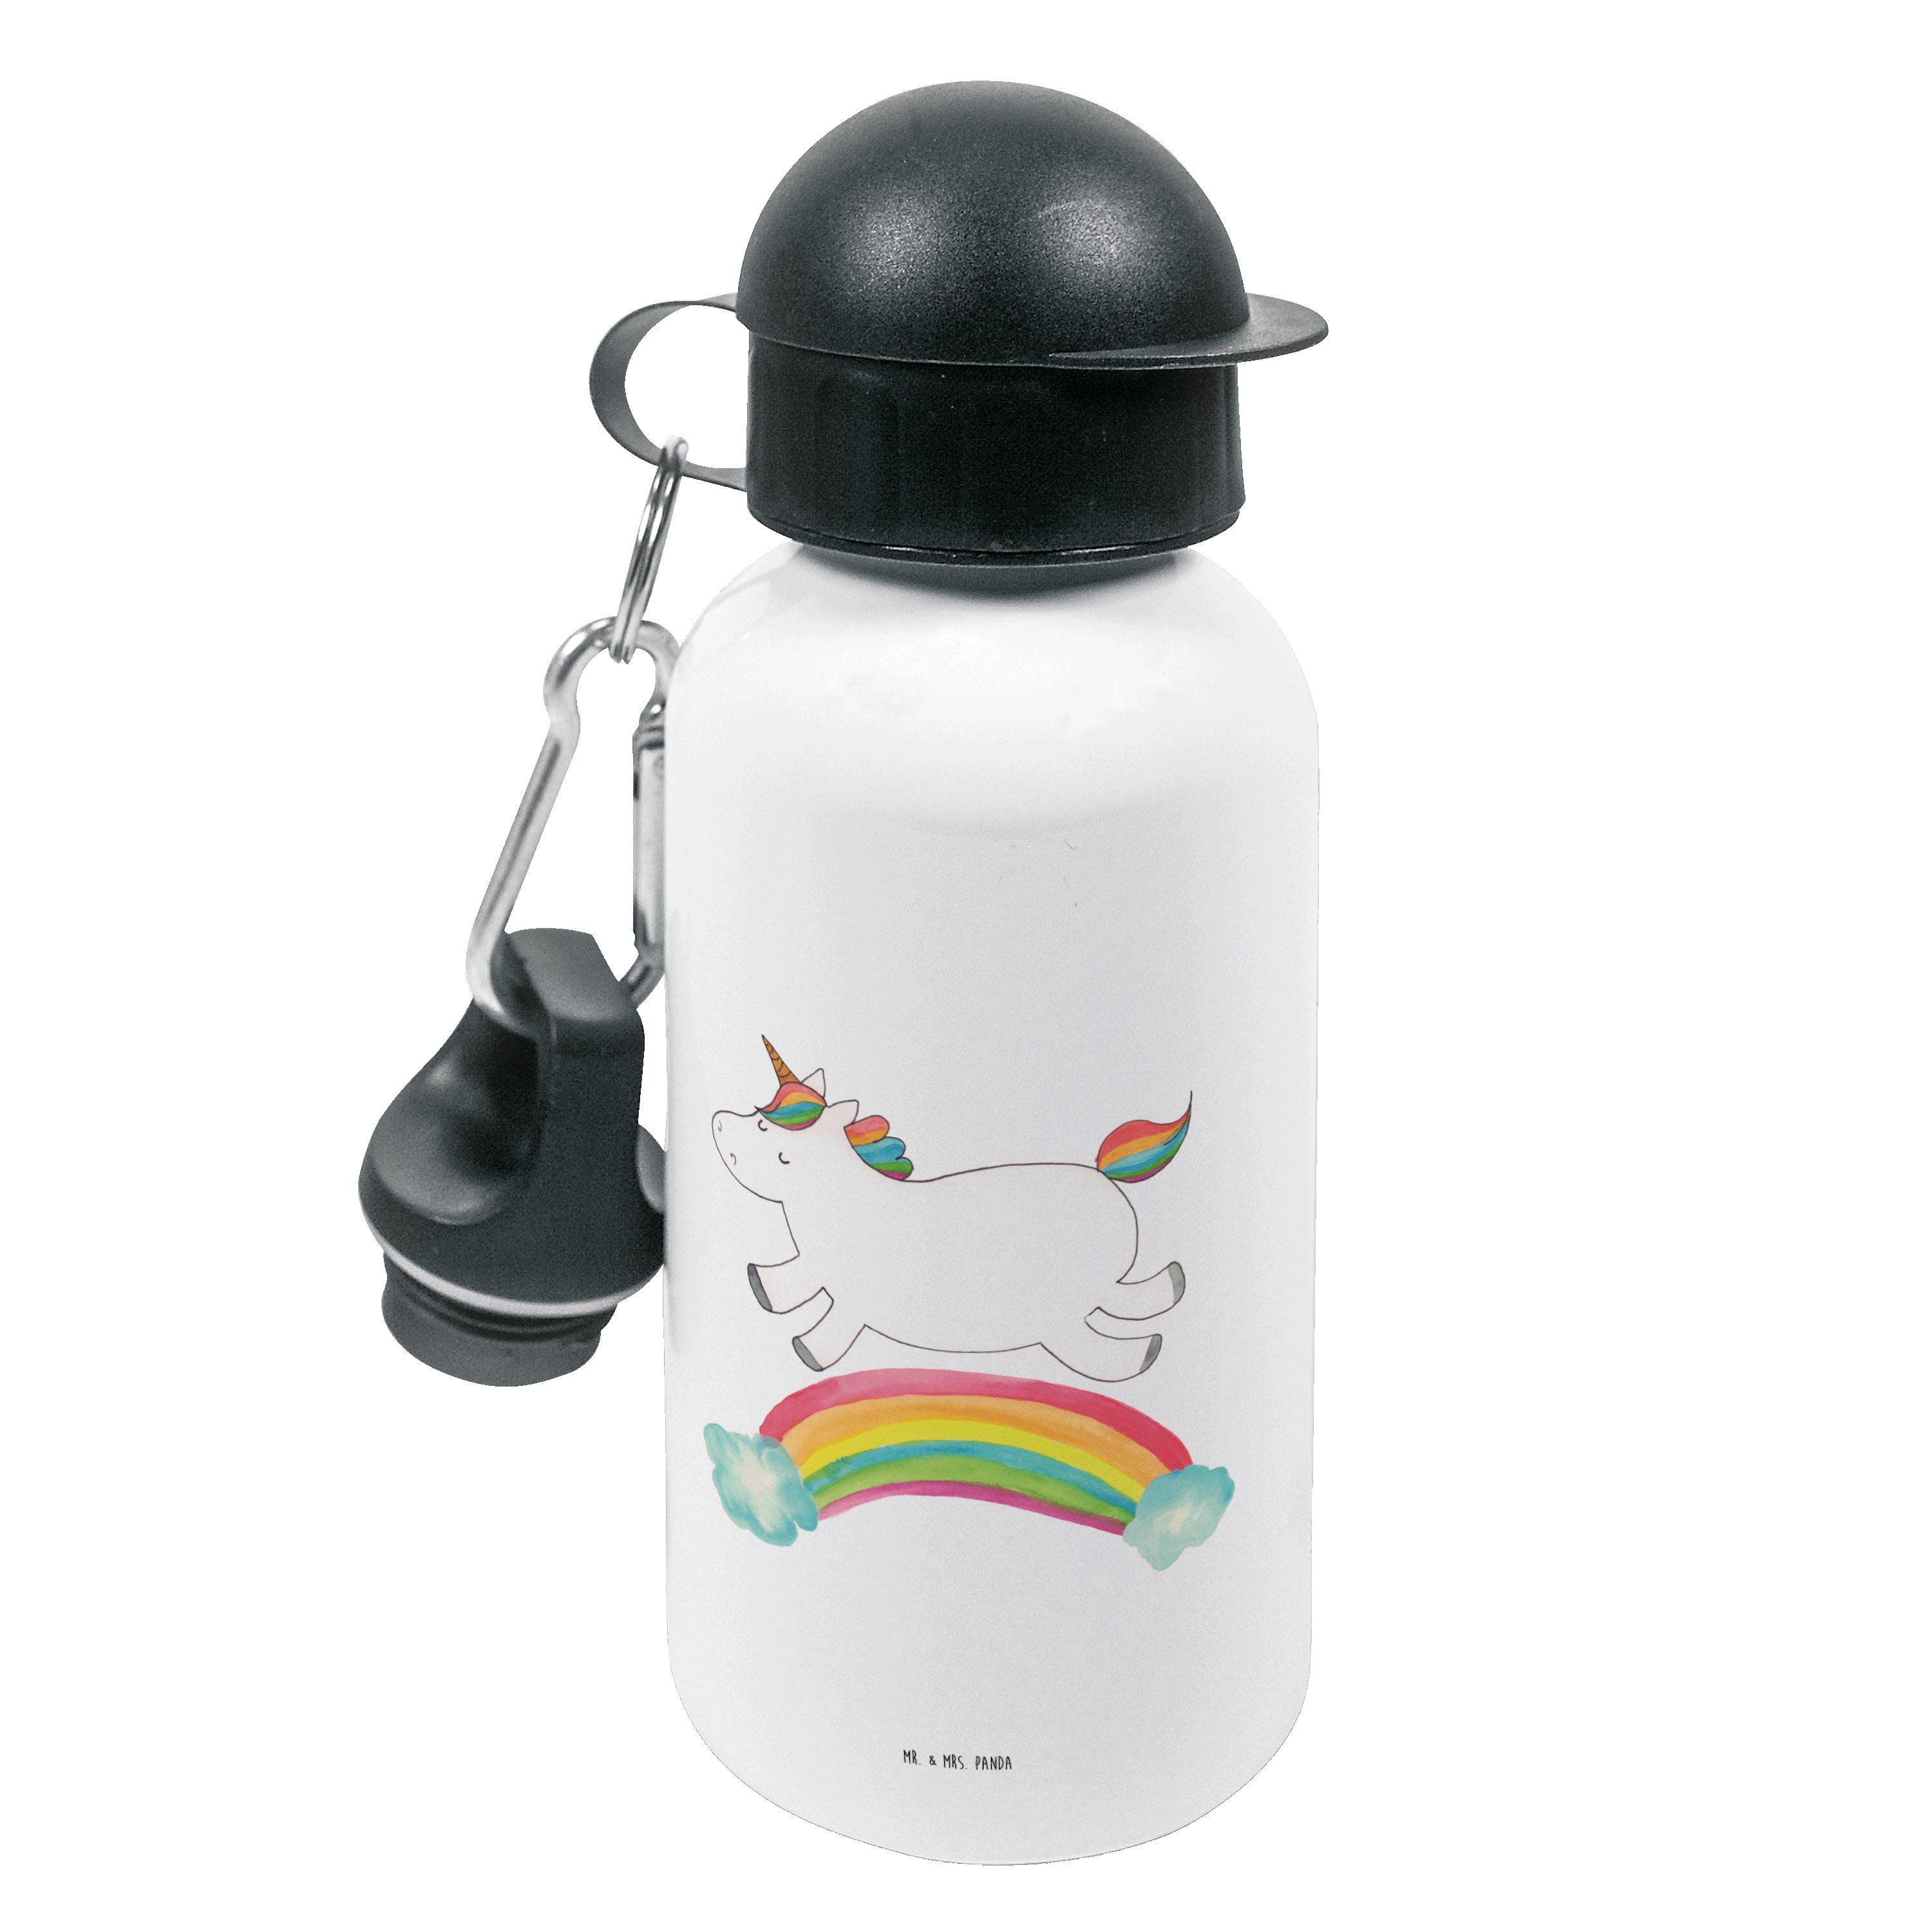 Mr. & Mrs. Panda Trinkflasche Einhorn Regenbogen - Weiß - Geschenk, Trinkflasche, Jungs, Kinderflas